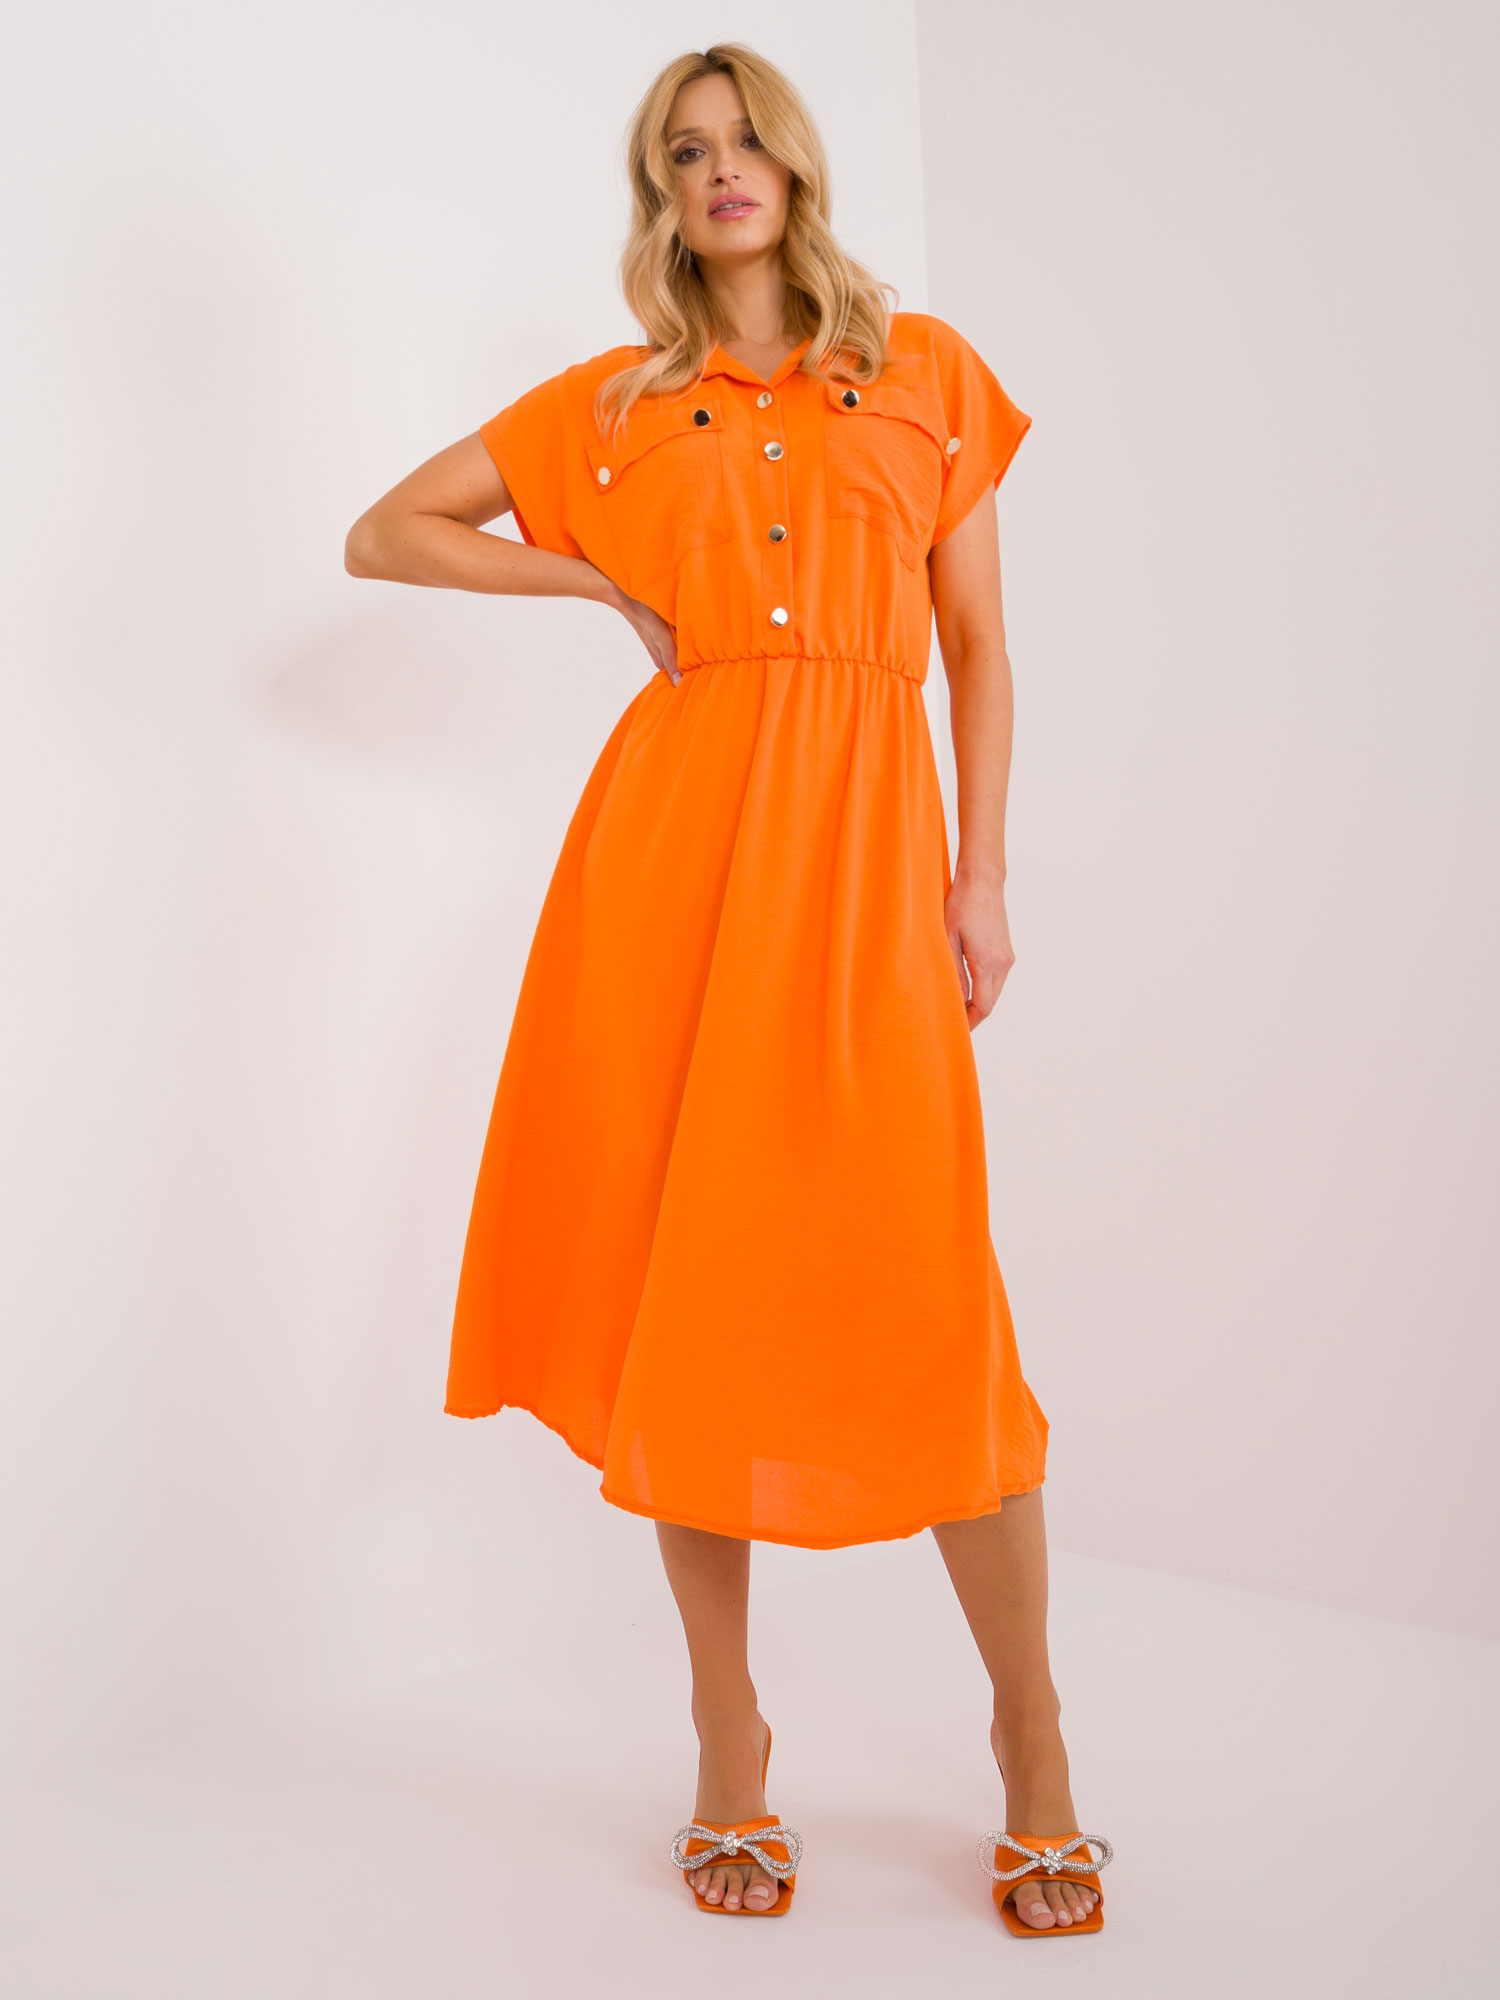 Oranžové midi šaty na knoflíky s kapsami a límečkem DHJ-SK-19002.31-orange Velikost: ONE SIZE